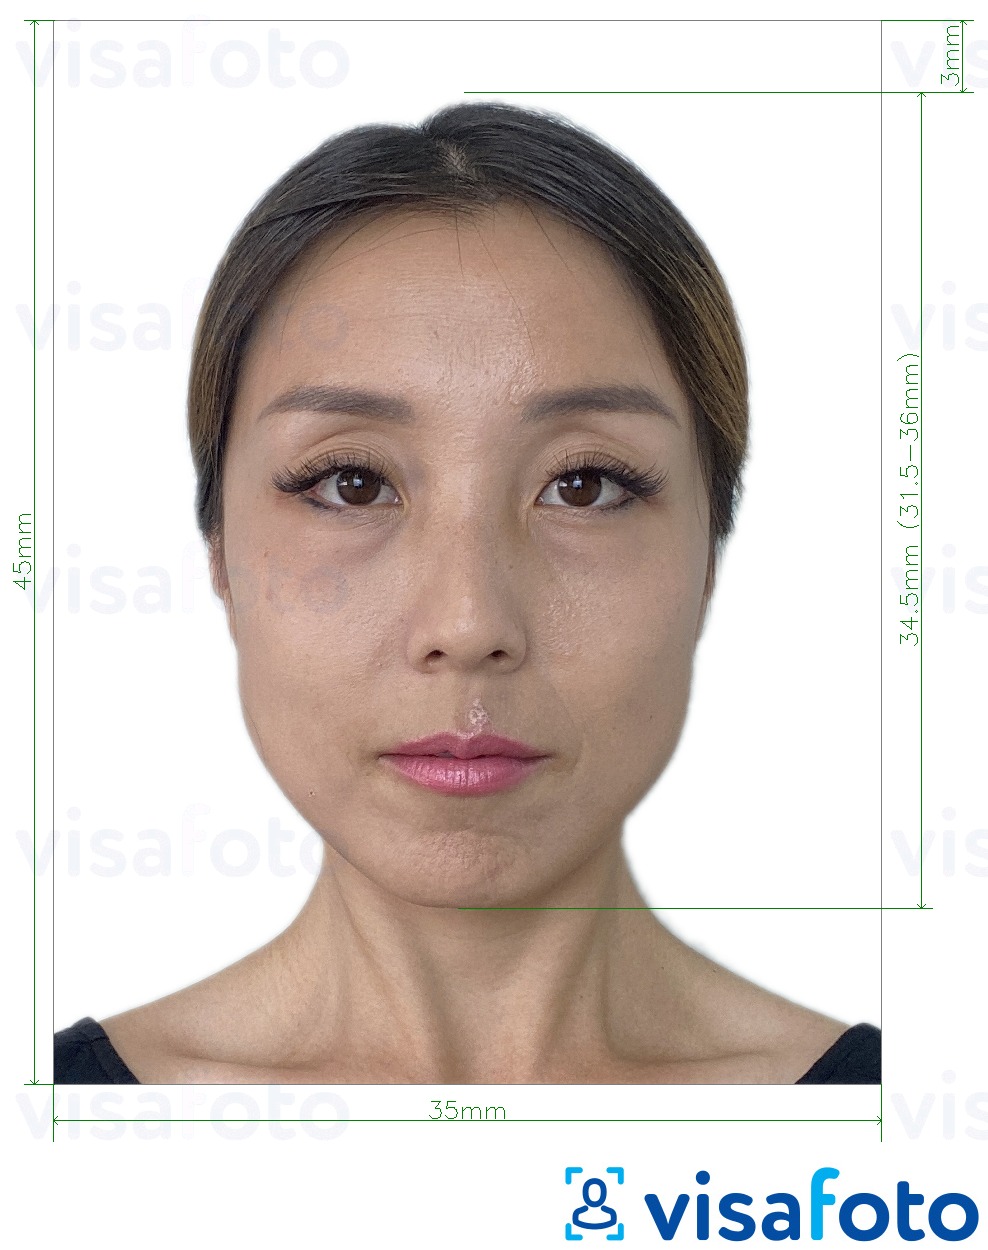  Lõuna-Korea registreerimiskaart 35x45 mm fotonäidis koos täpse infoga mõõtude kohta.